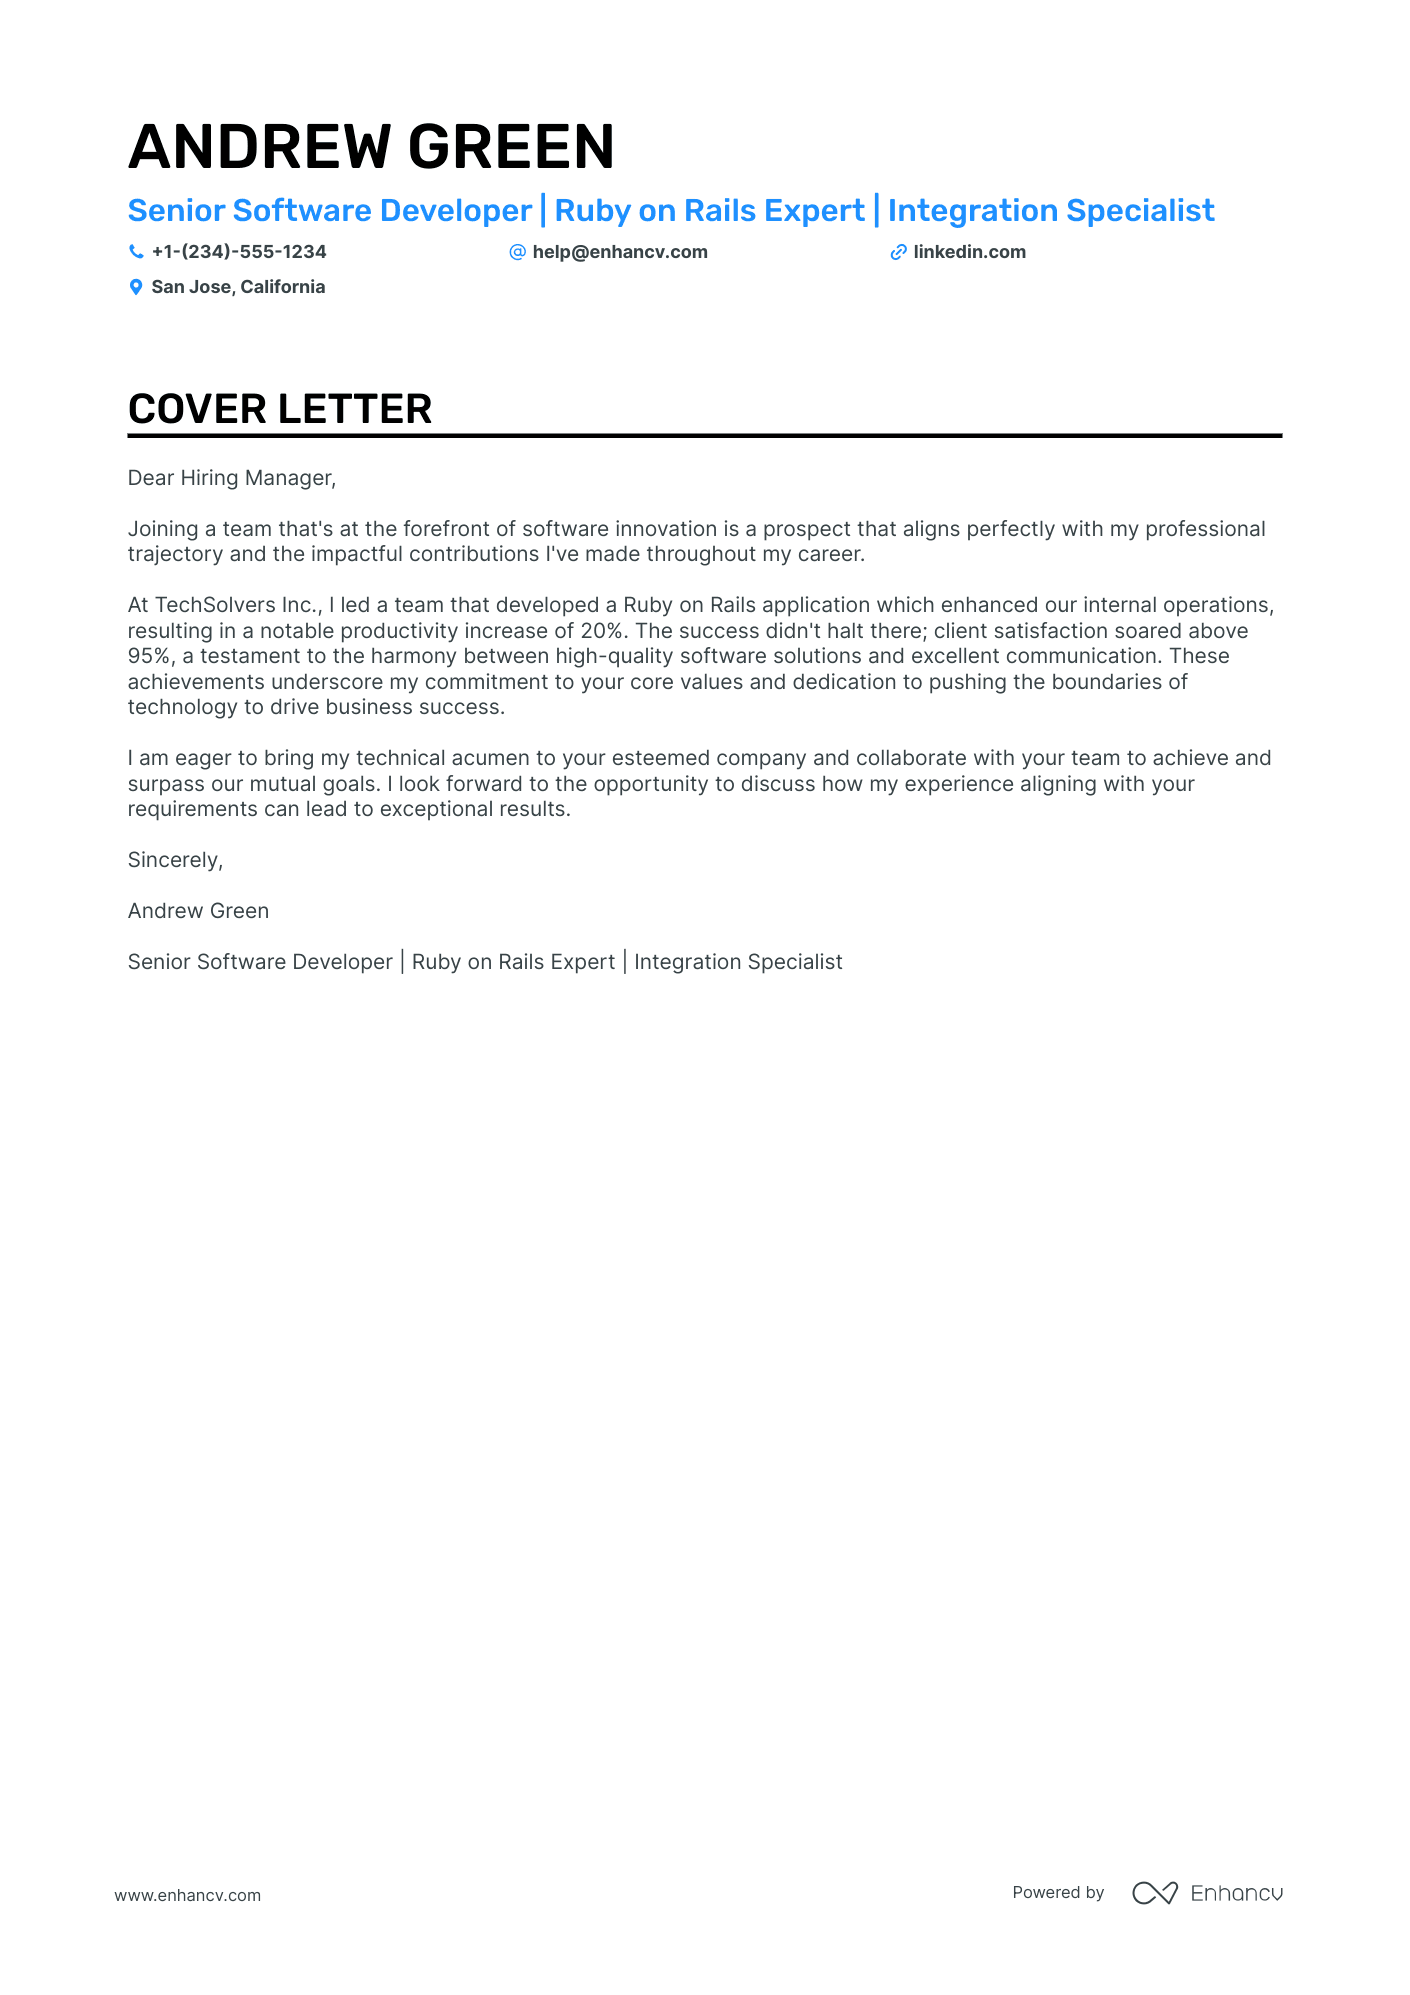 cover letter wordpress developer